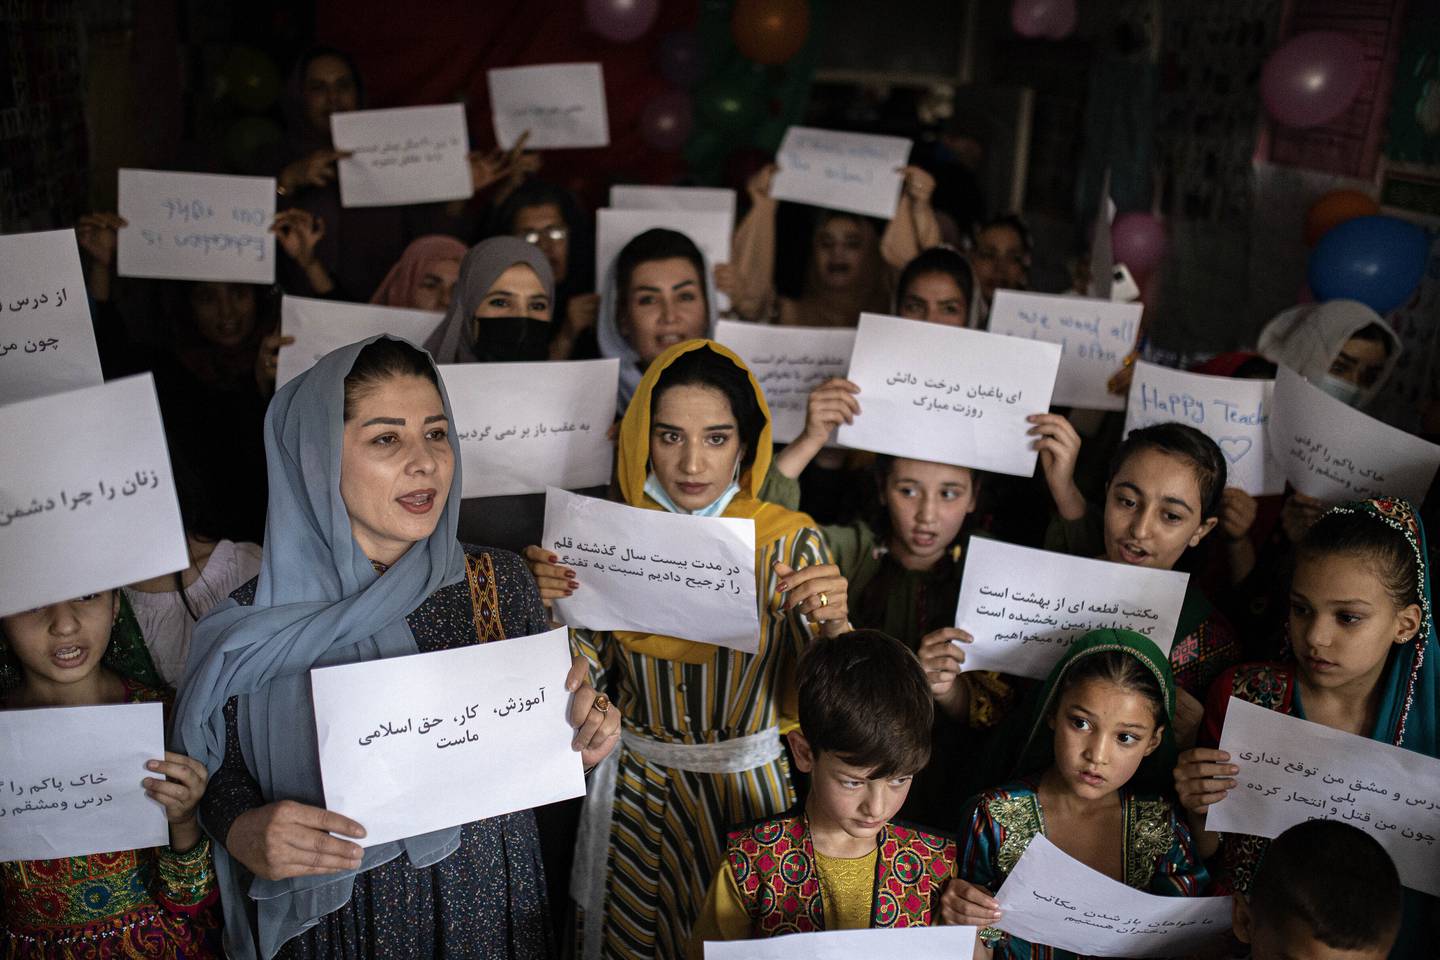 Kvinner og lærere demonstrerte i oktober i fjor for å kreve rettighetene sine og lik tilgang til utdanning for kvinner og jenter.